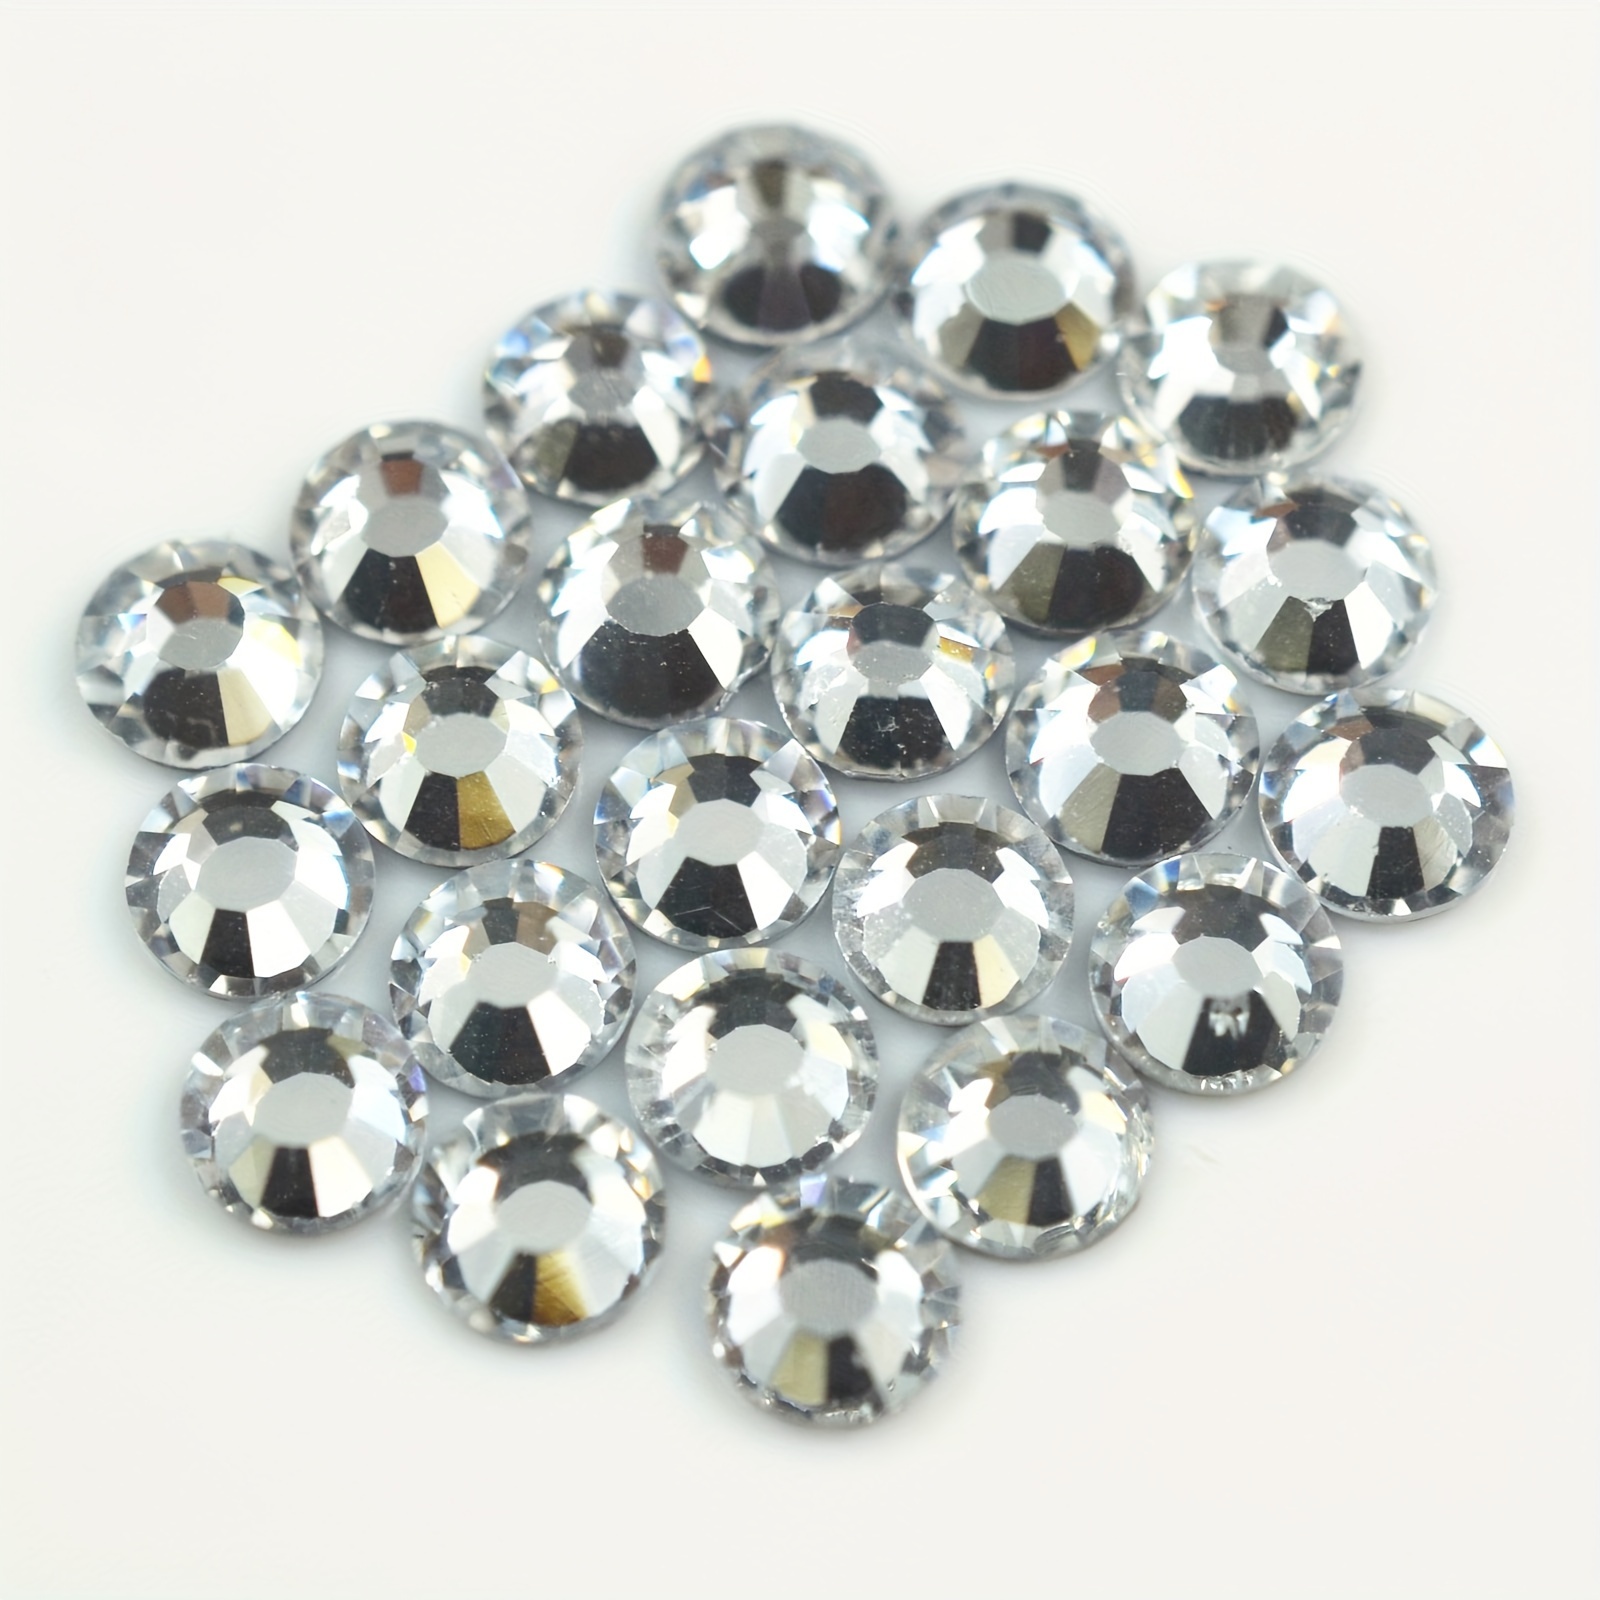 4000 piezas de piedras de cristal redondas de fijación en caliente